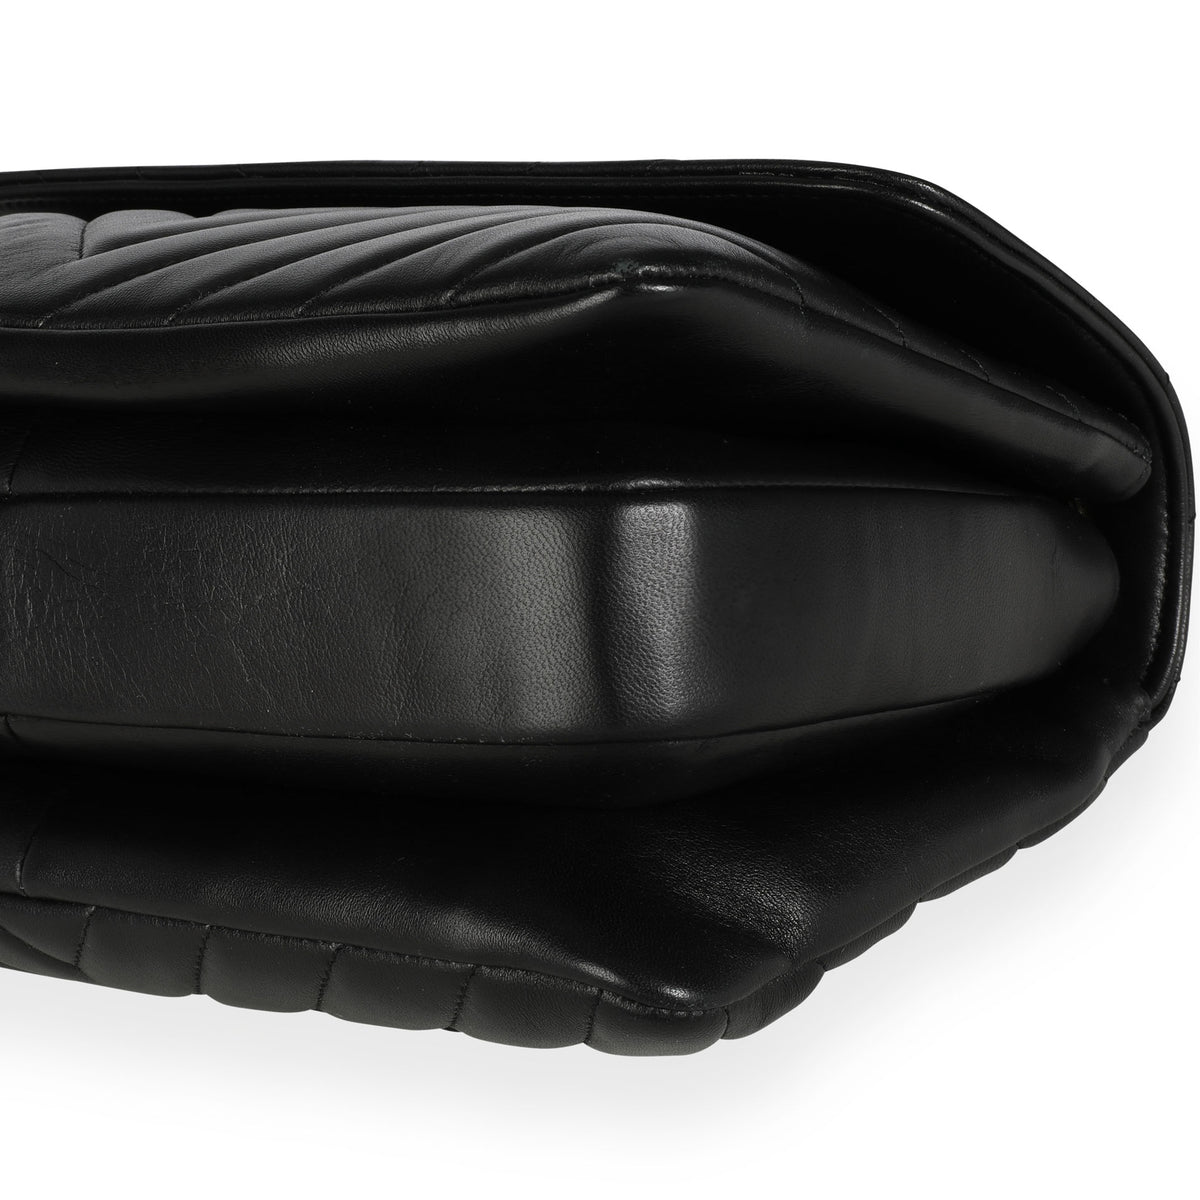 CHANEL Vintage CC Logo Quilted Leather Flap Bag Black Beige